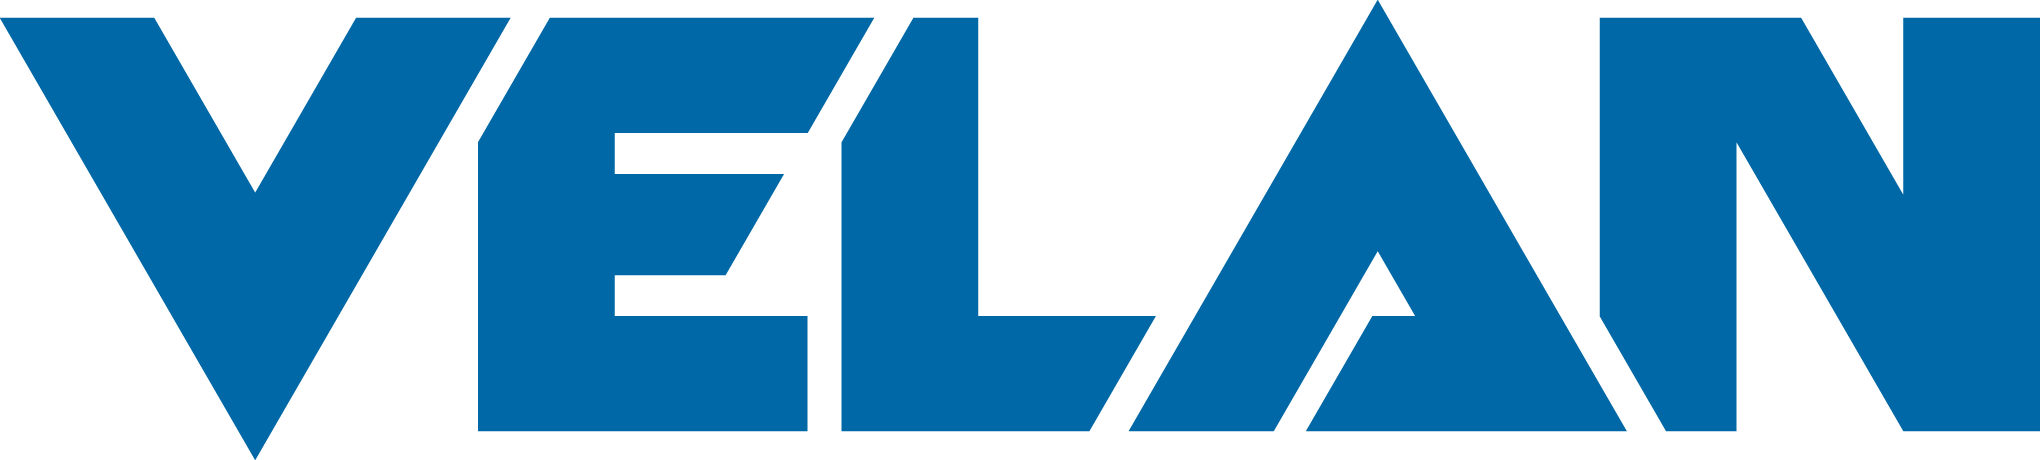 Logo Transparent Velan